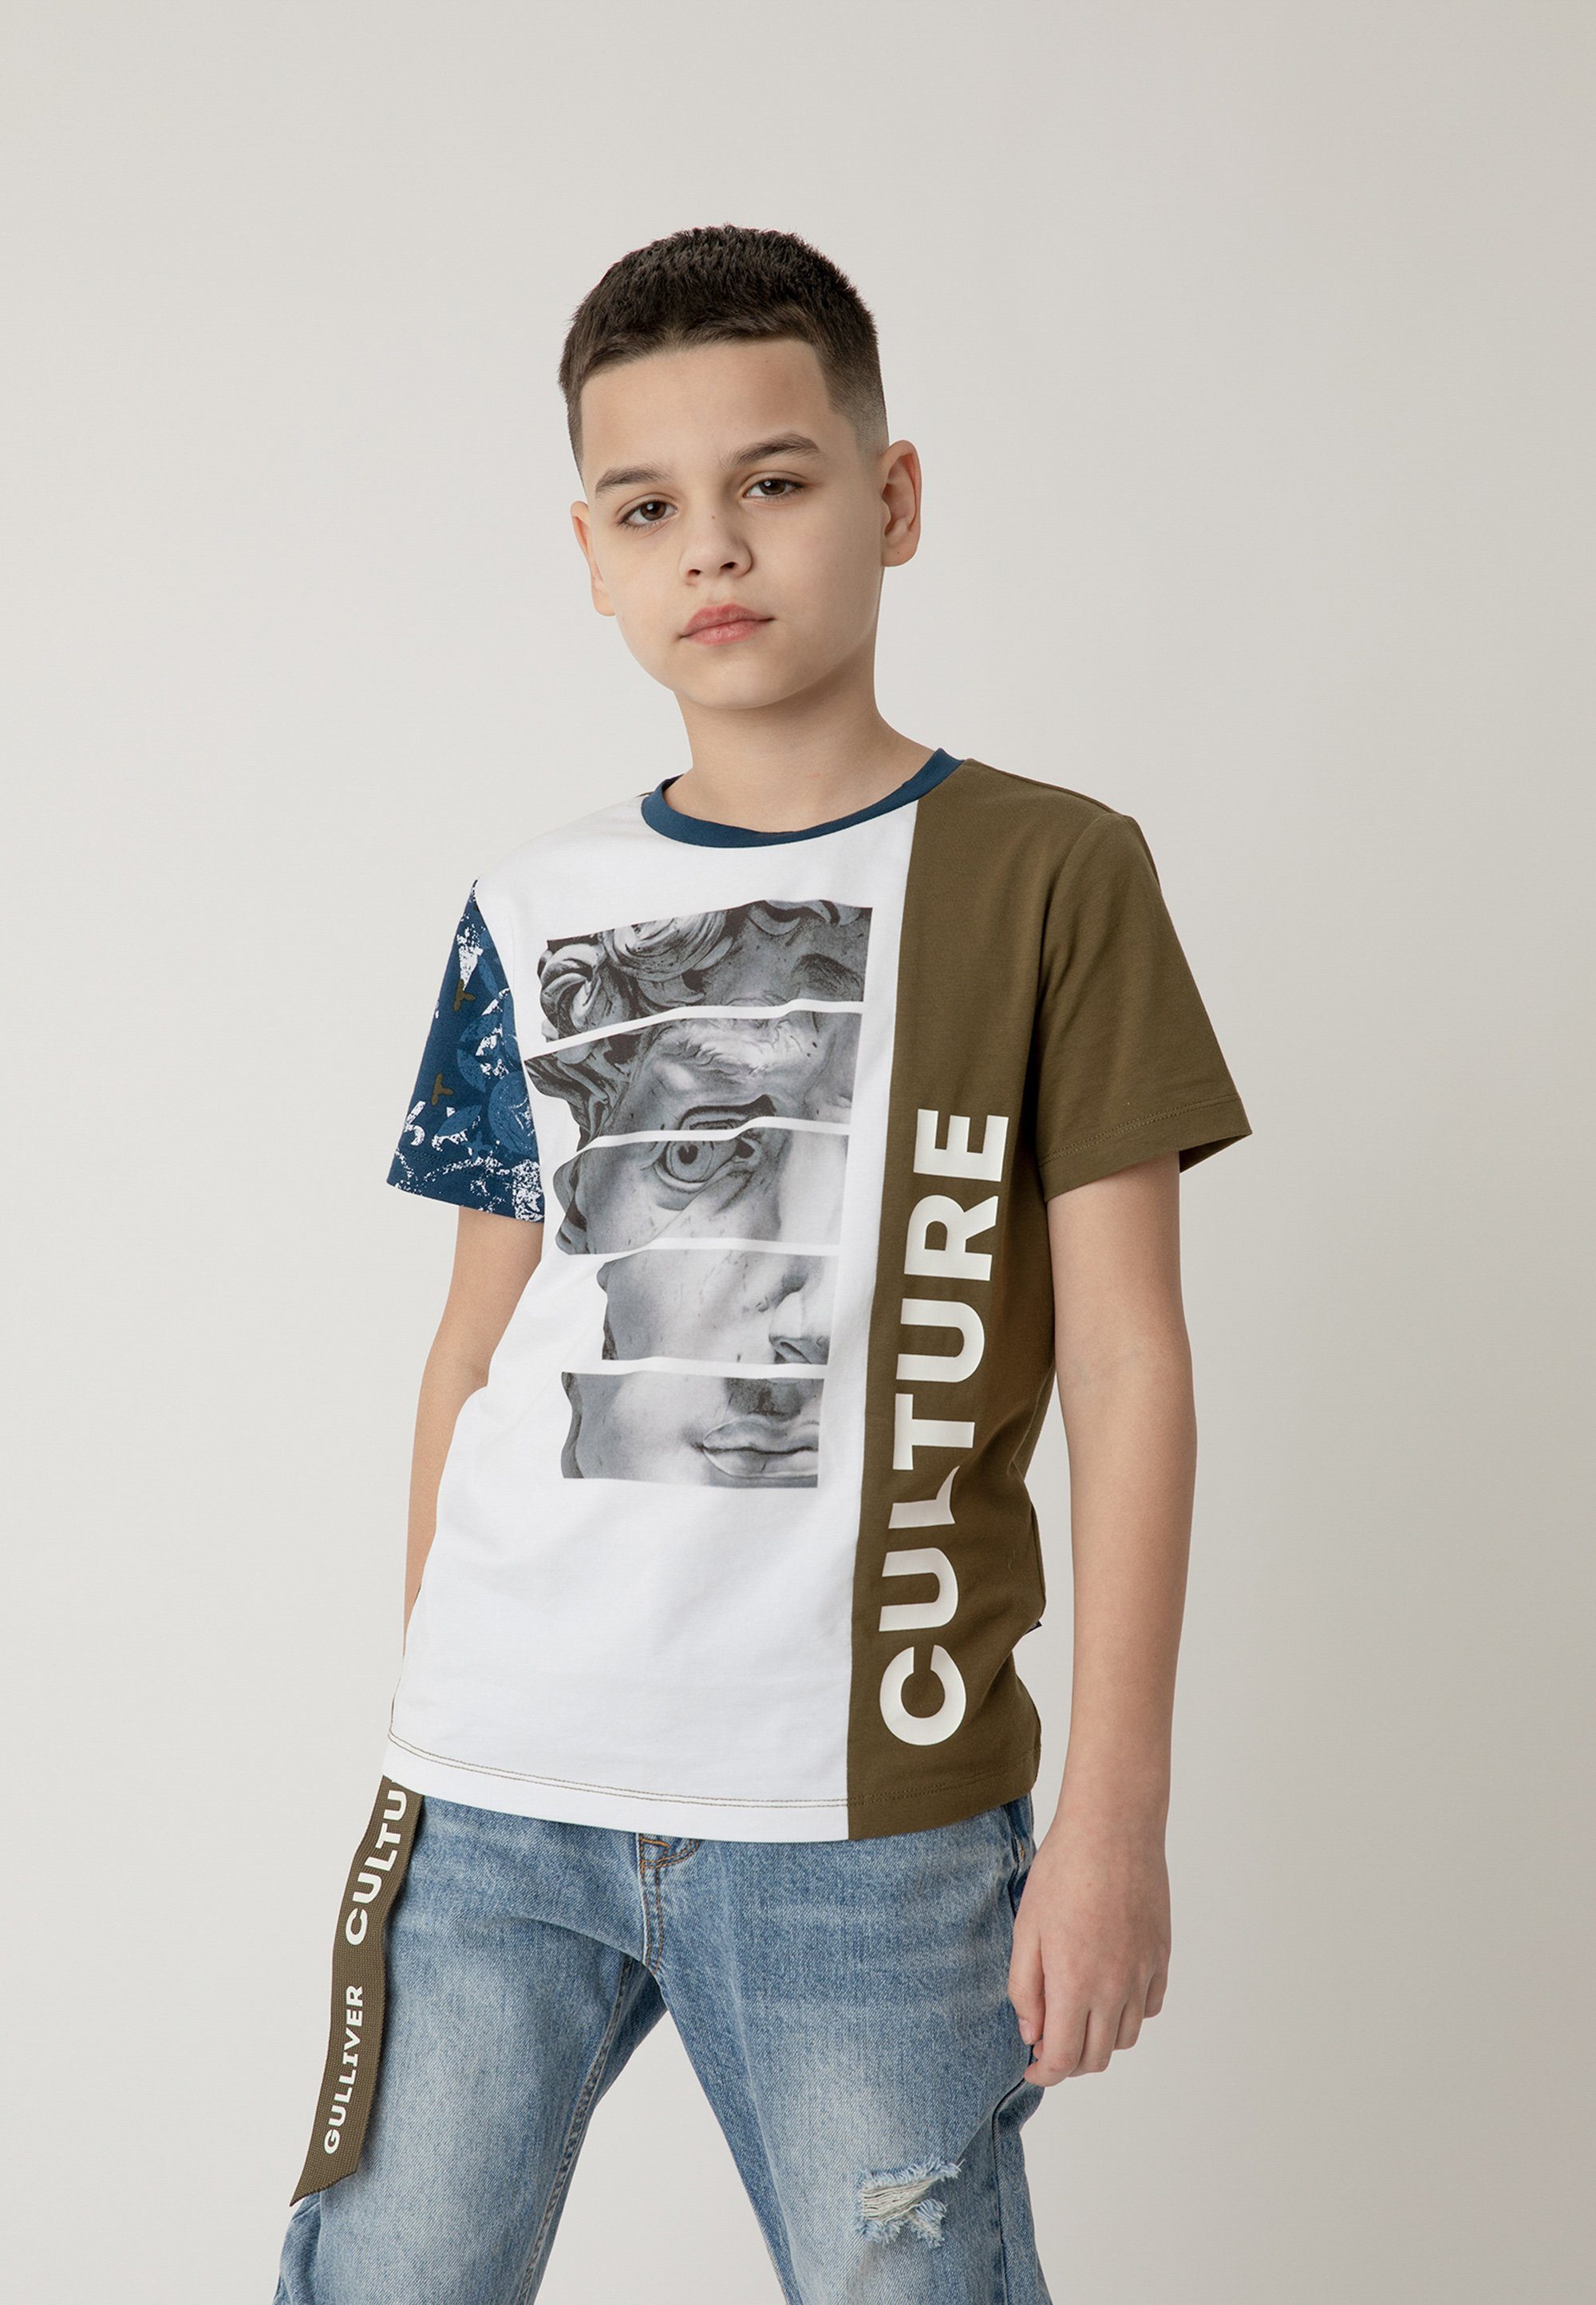 Gulliver T-Shirt mit coolem Color-Blocking-Design